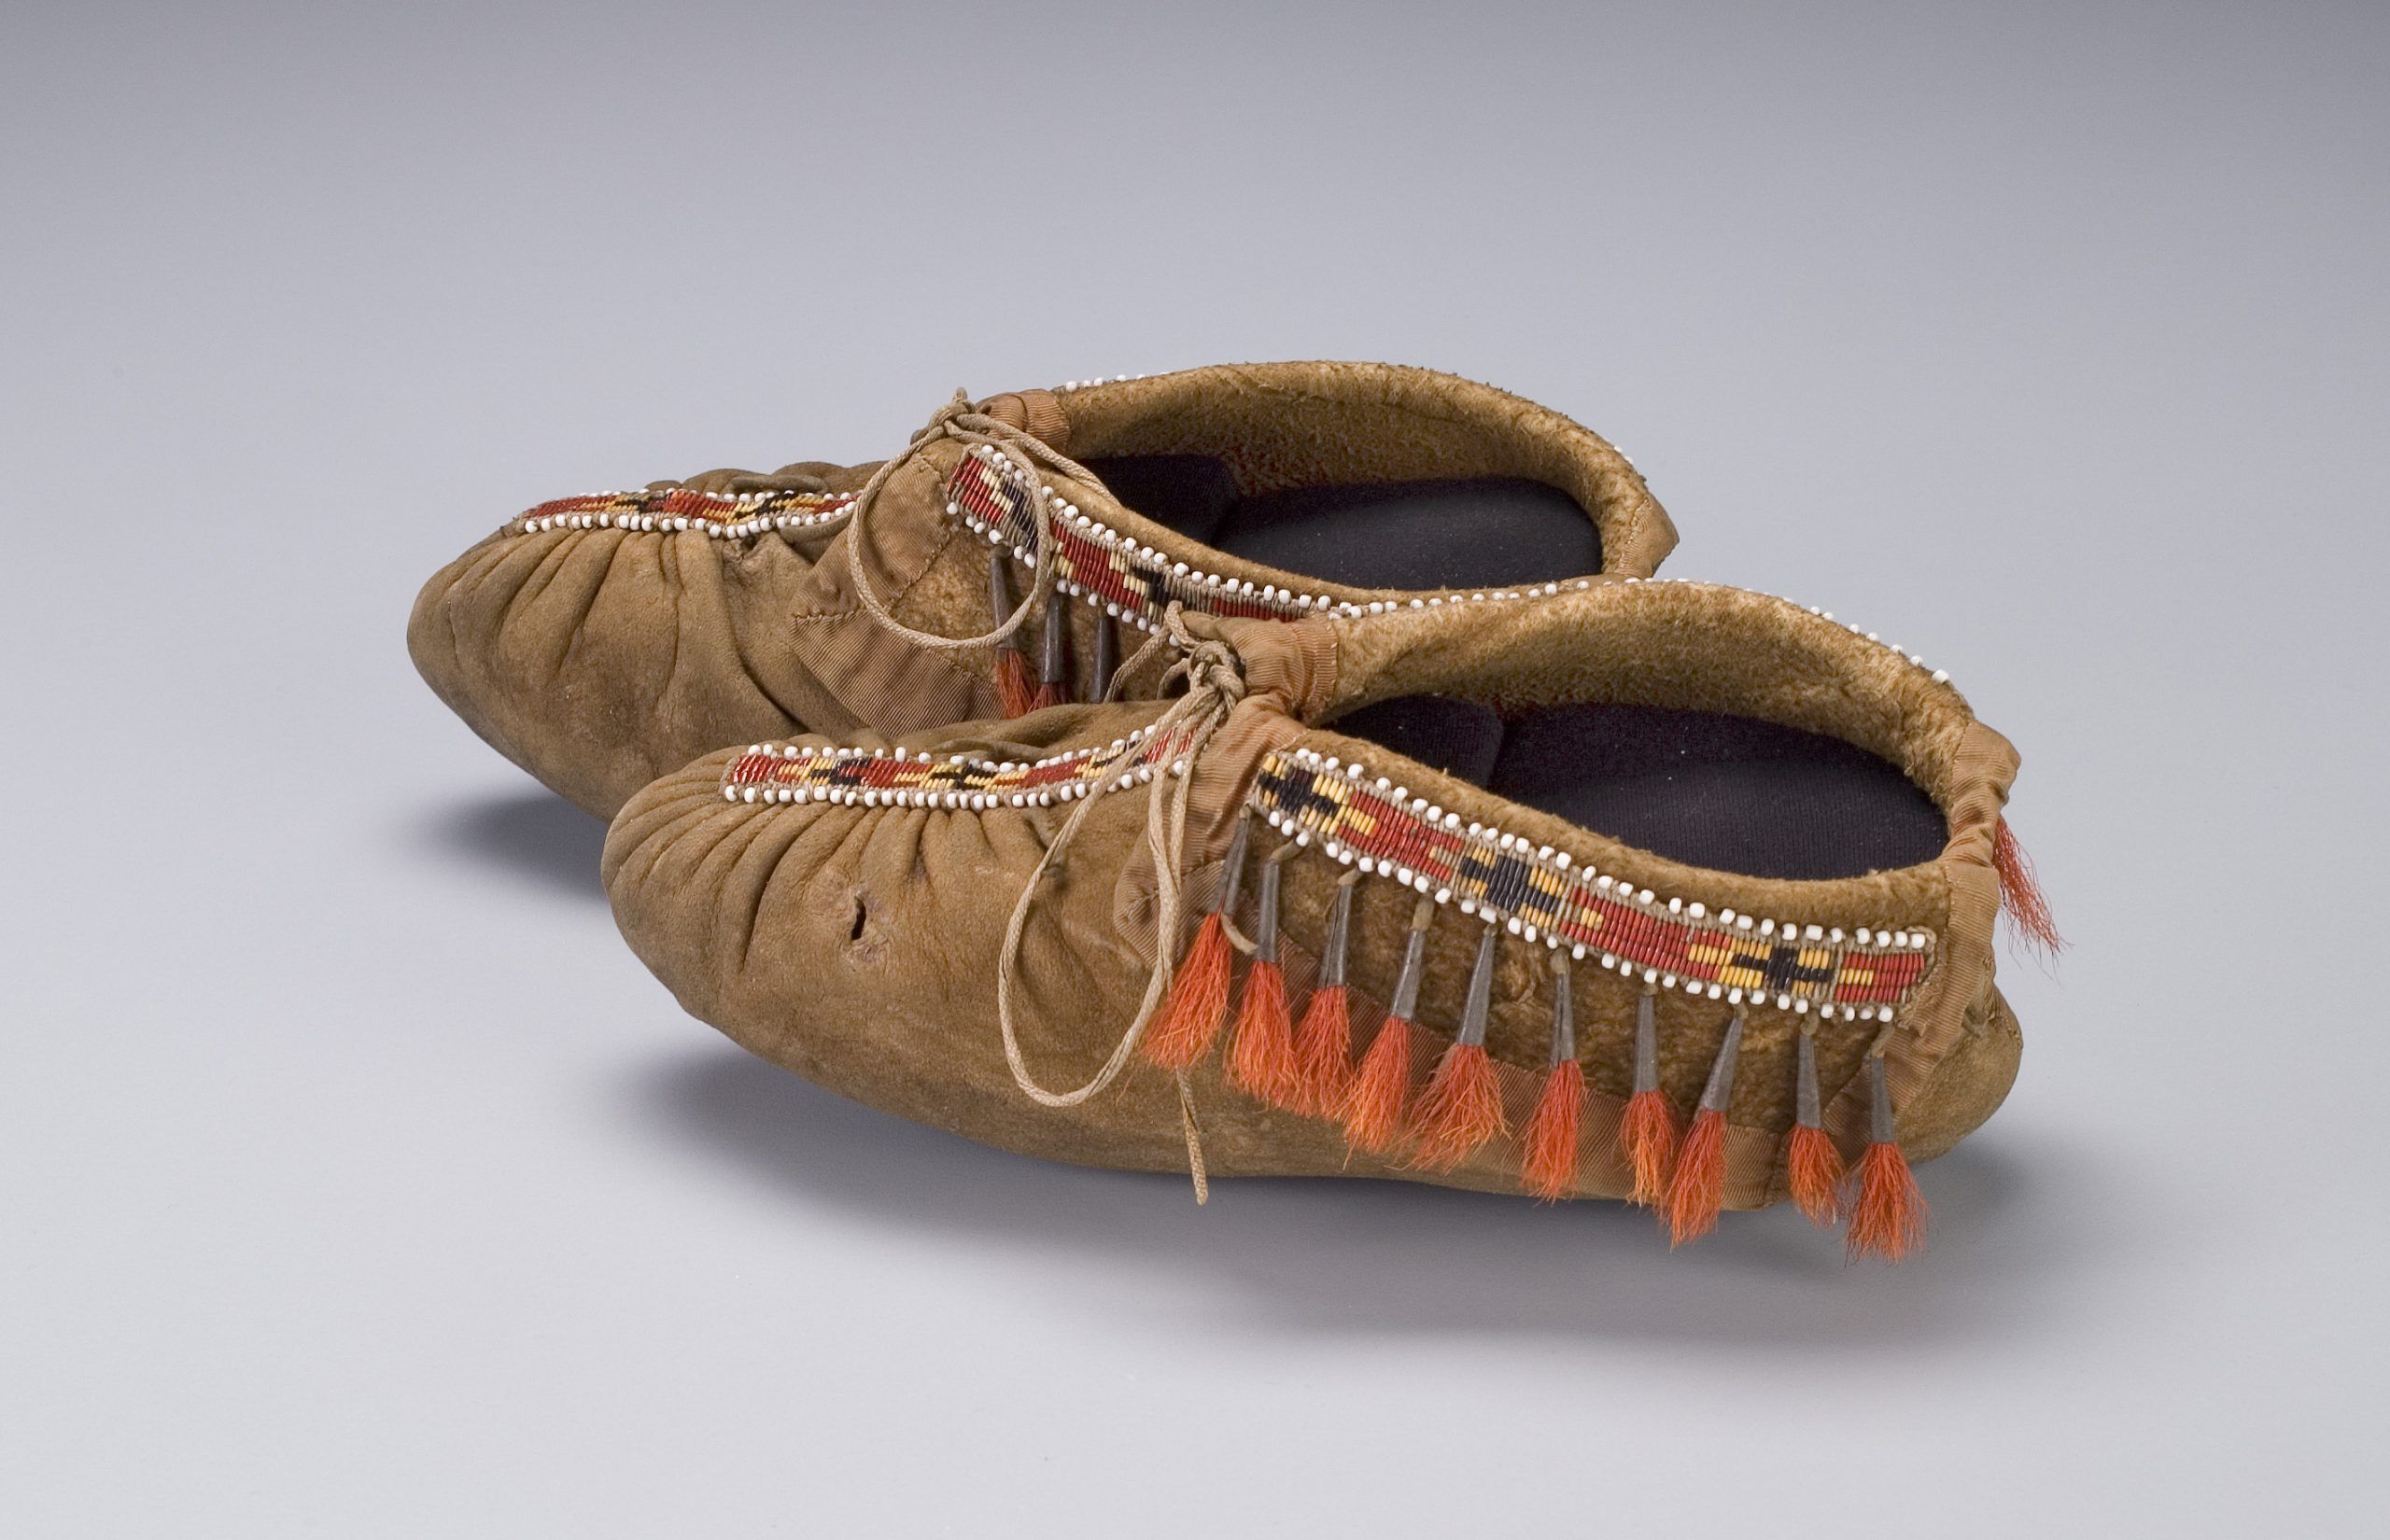 Что за обувь - индейские мокасины? какие они бывают? чем отличаются от современной обуви?